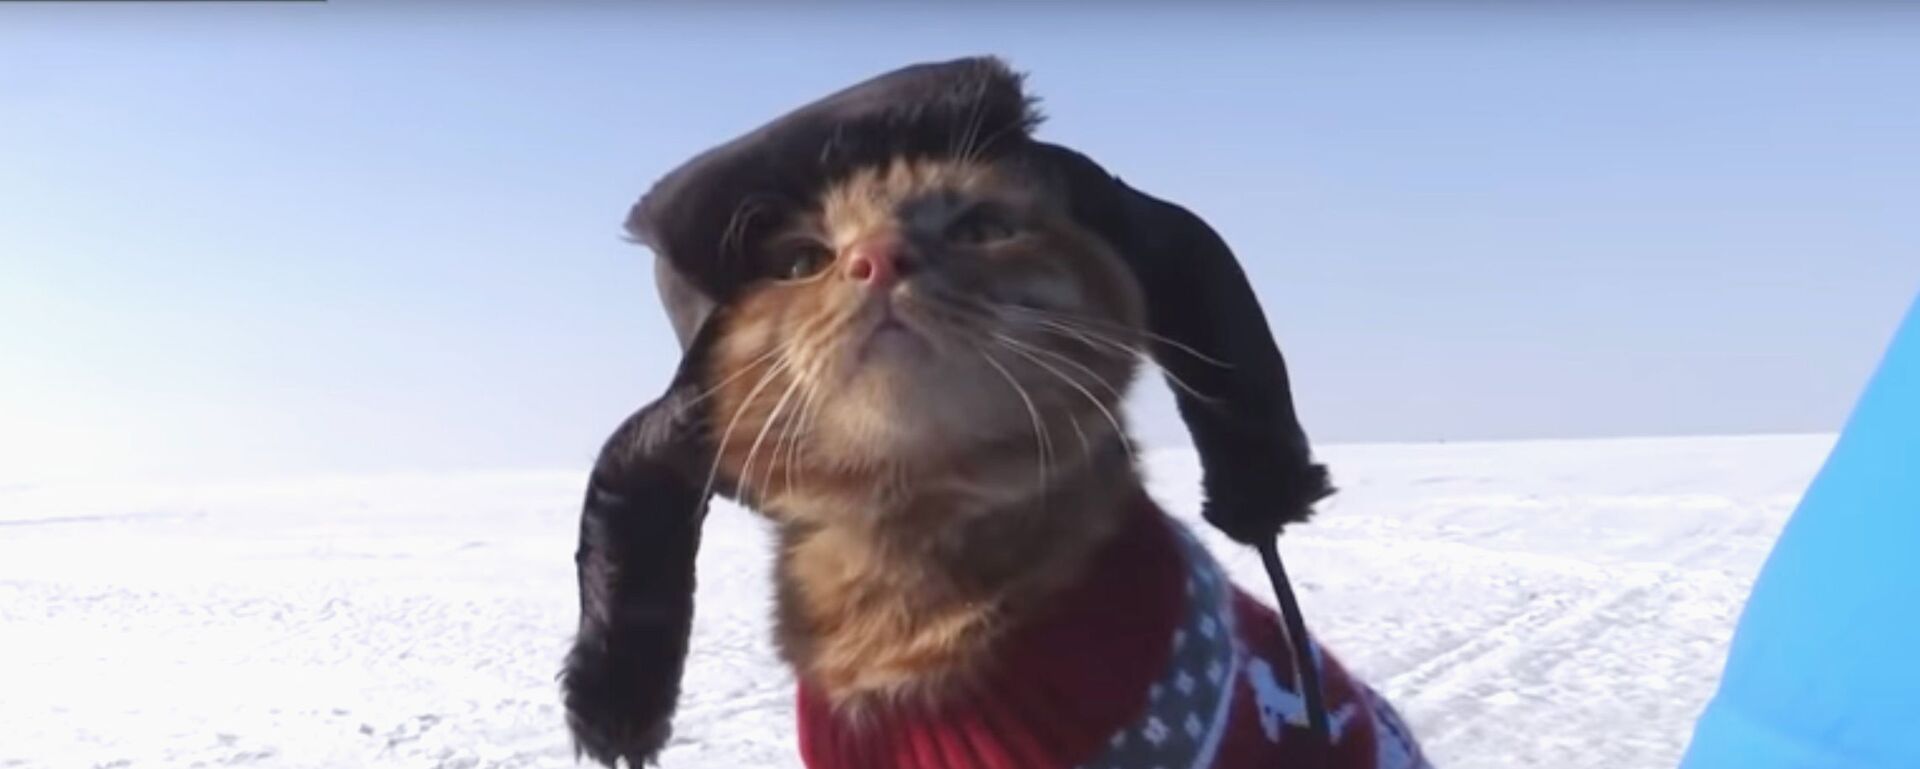 Кот сопровождает хозяина на рыбалке и следит за клевом - видео - Sputnik Казахстан, 1920, 25.01.2021